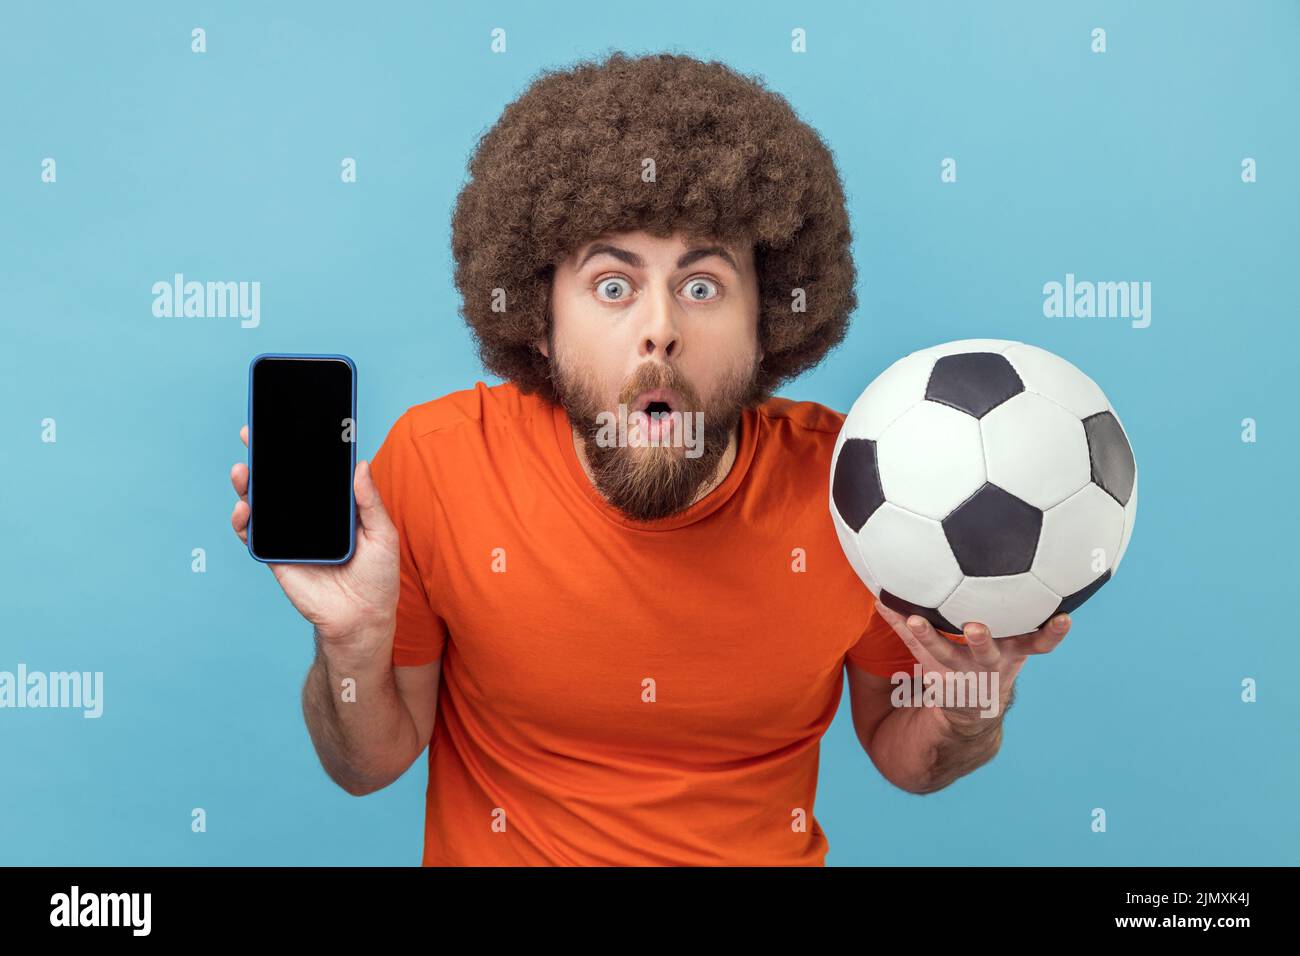 Retrato de hombre conmocionado con peinado afro usando camiseta de pie con balón de fútbol y mostrando teléfono celular con pantalla vacía para el anuncio. Estudio de interior aislado sobre fondo azul. Foto de stock